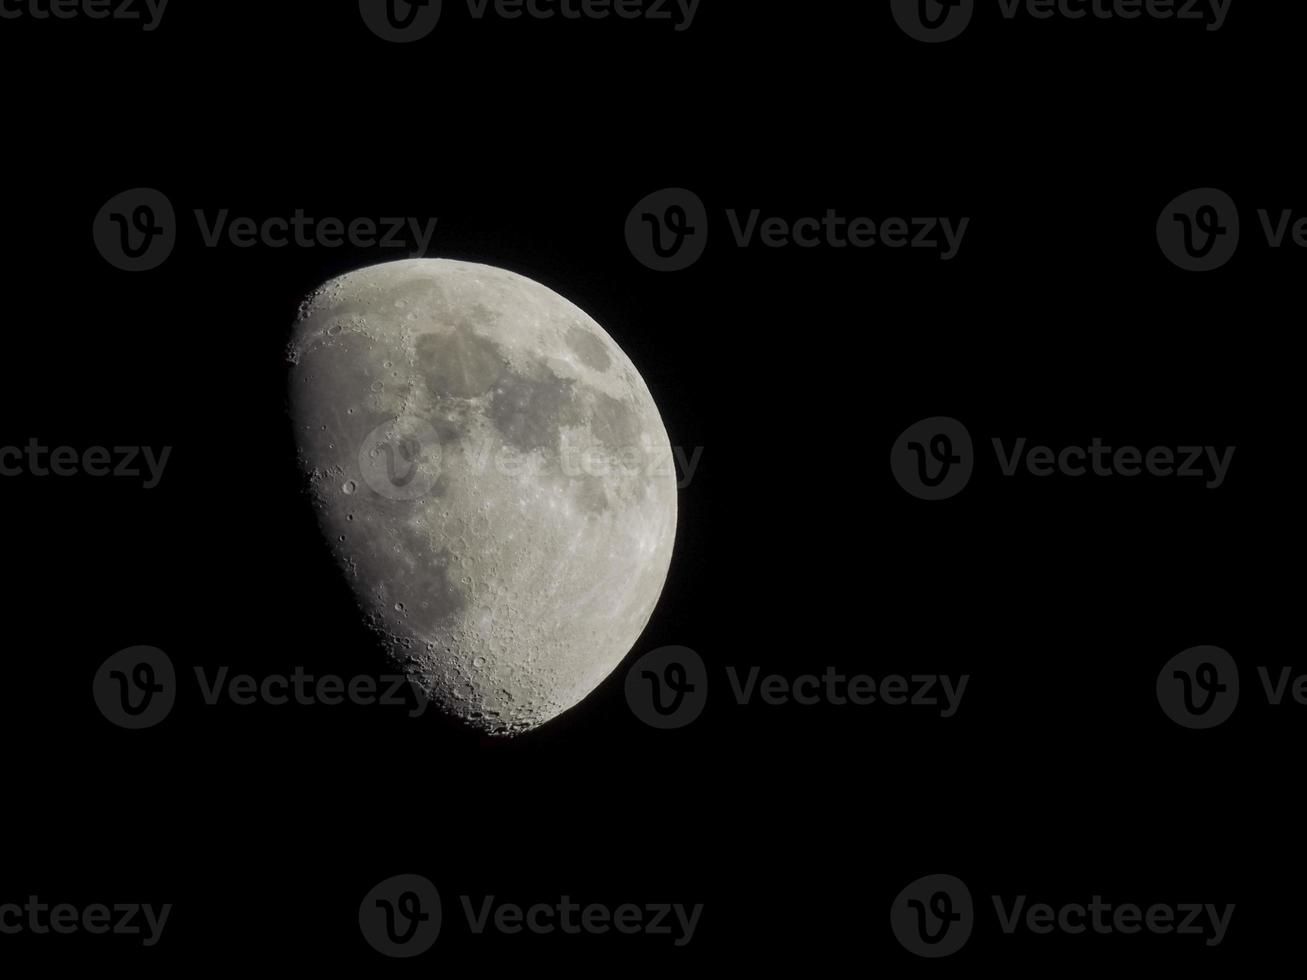 gibbous maan gezien met telescoop foto